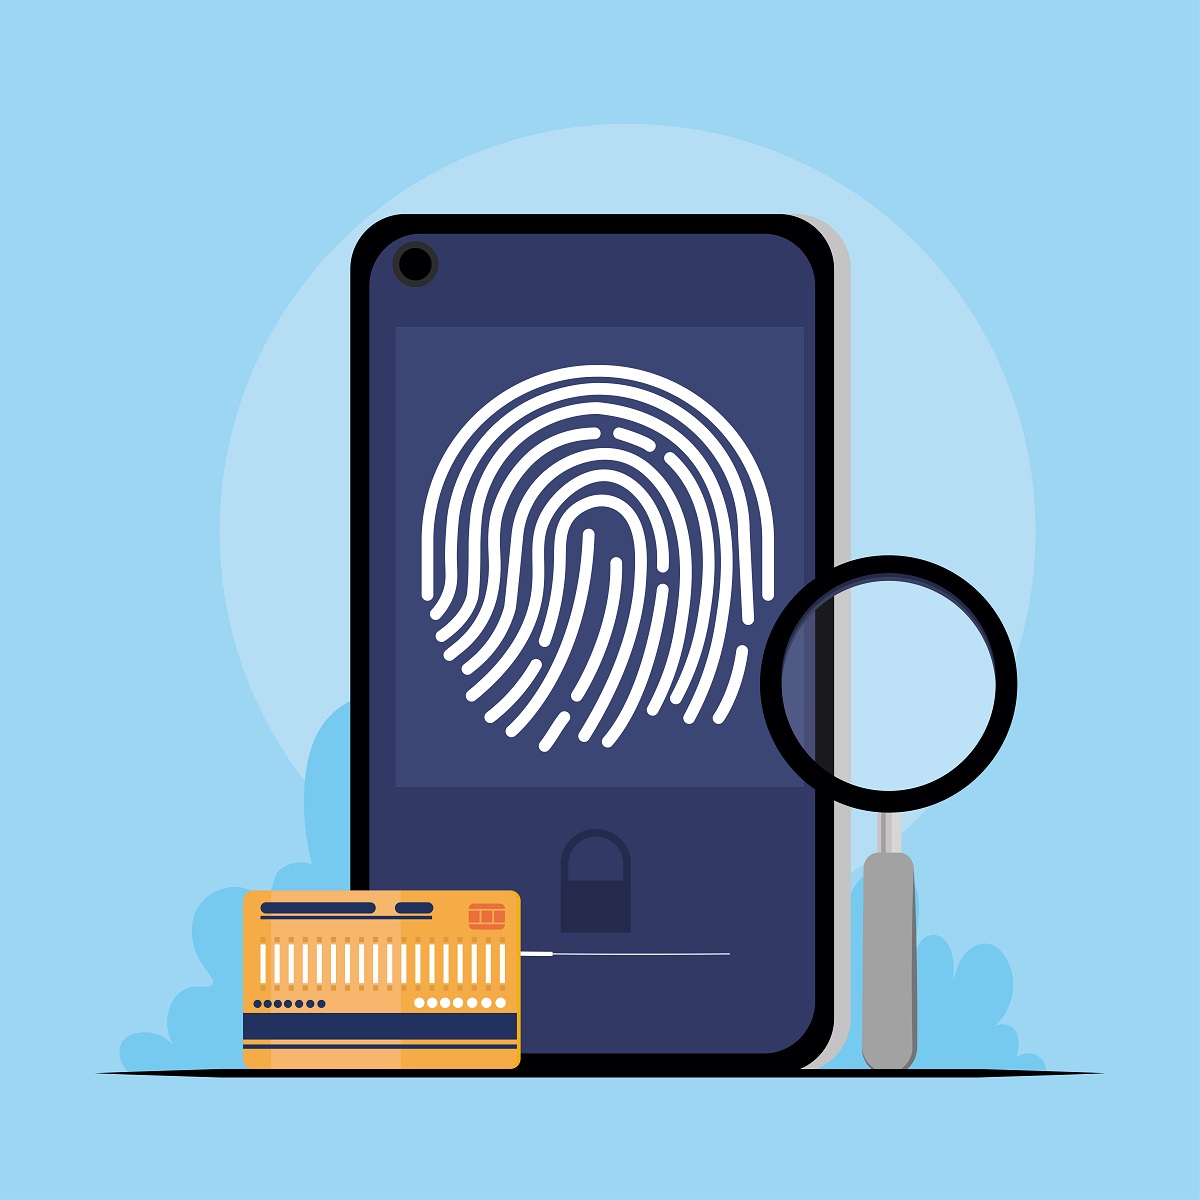 Verificación de identidad puede reducirhasta en un 99% el fraude en la banca